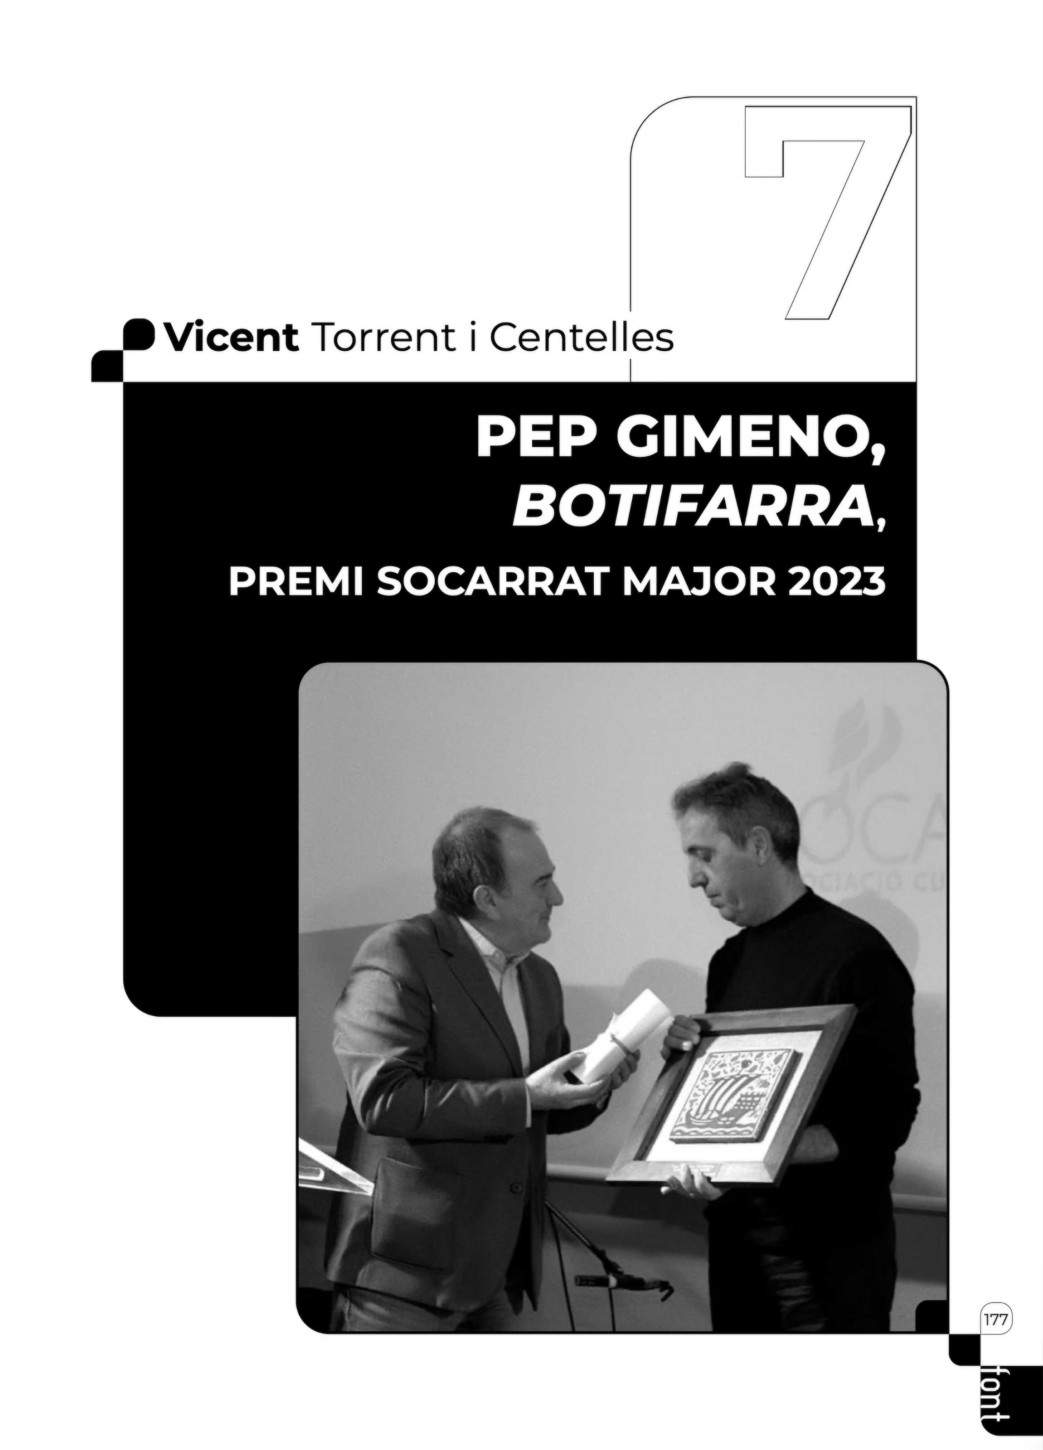 Discurs al Socarrat Major 2023, Pep Gimeno </em>Botifarra</em>